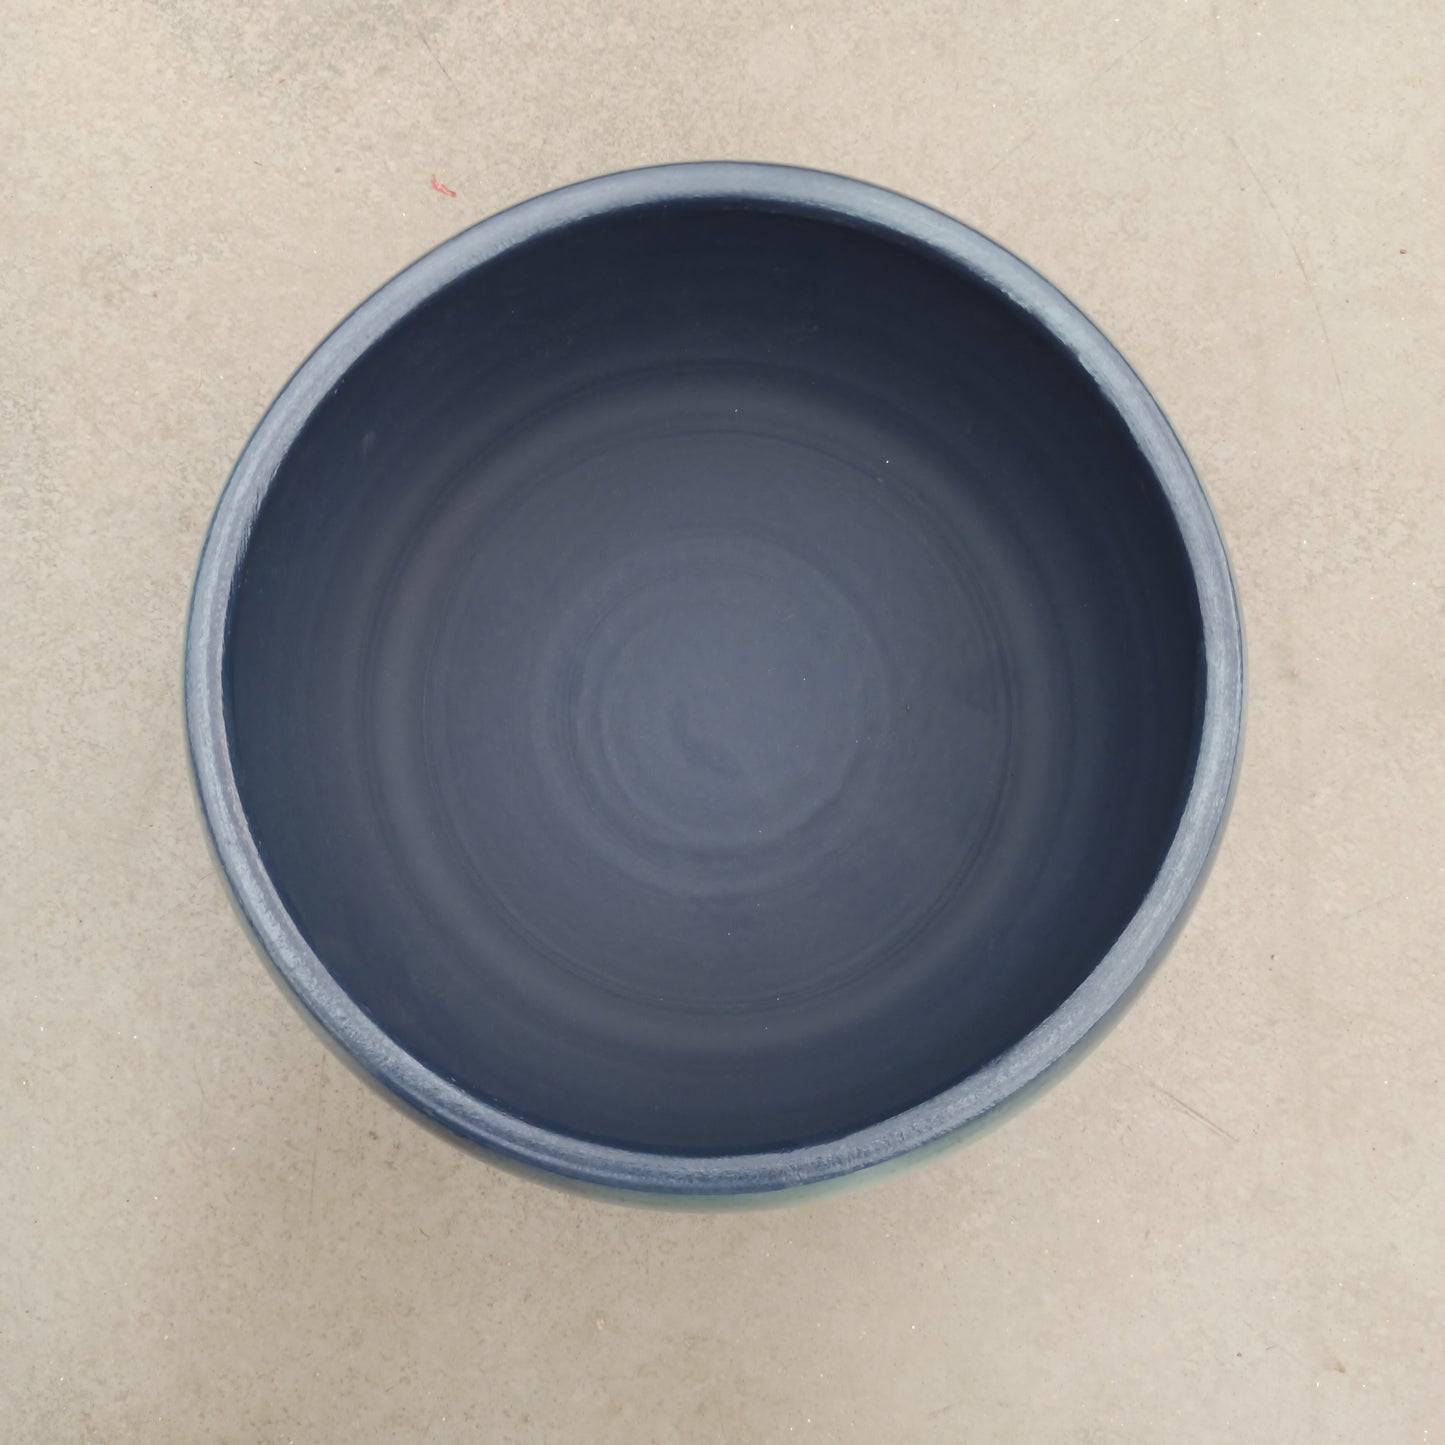 Lester blue bowl 12 x 28 cm